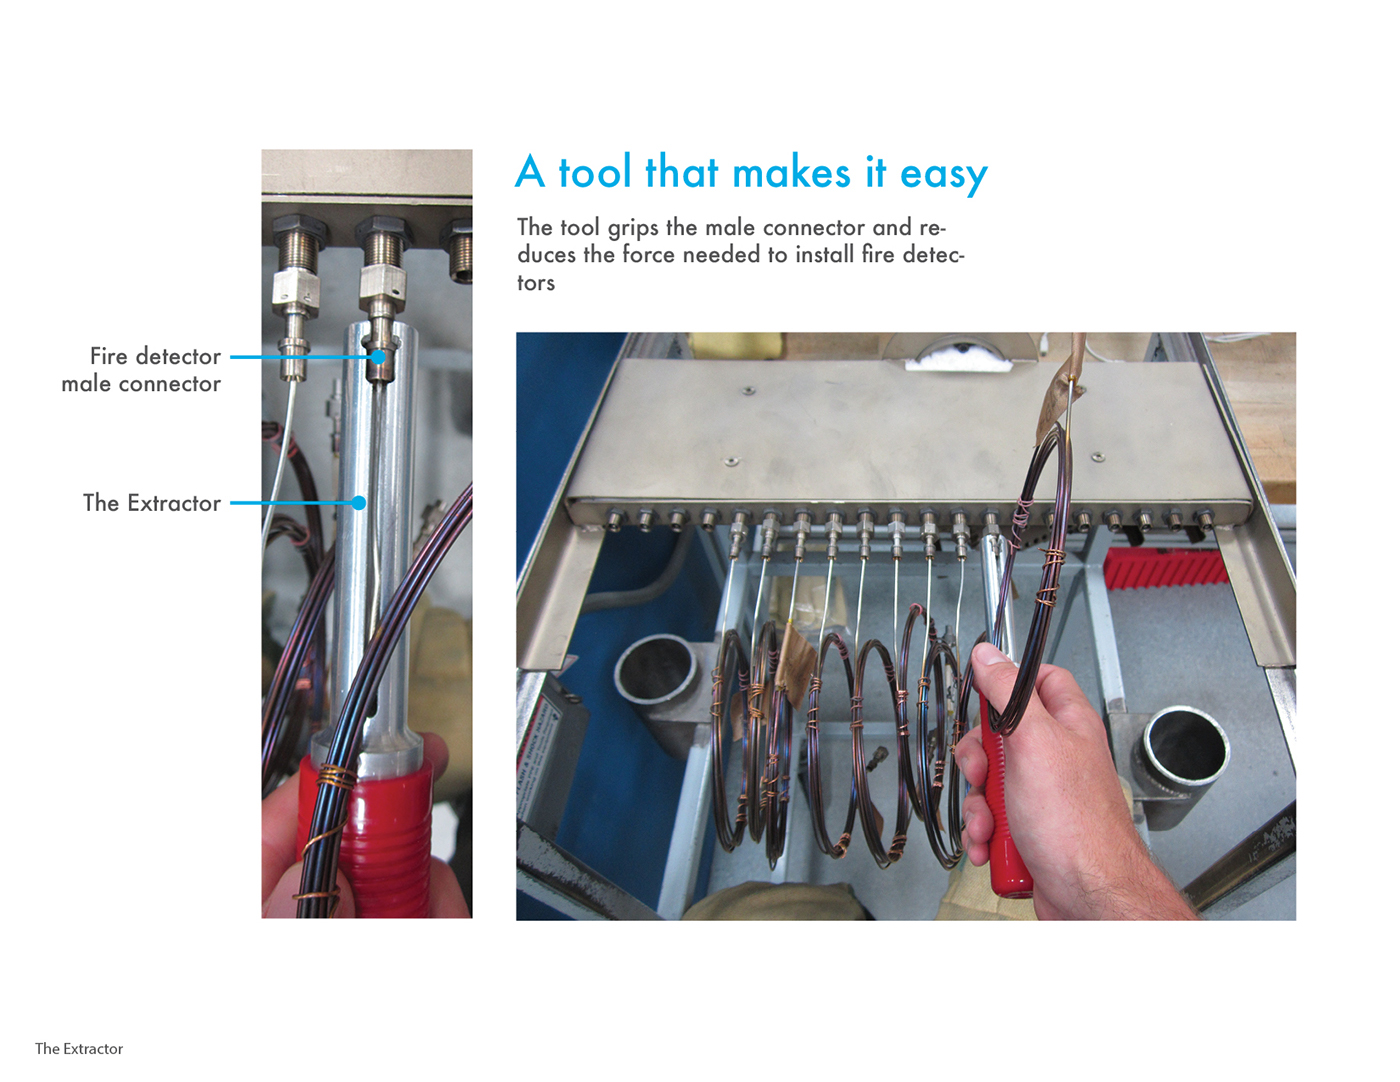 ergonomic manufacturing Aerospace tool hand